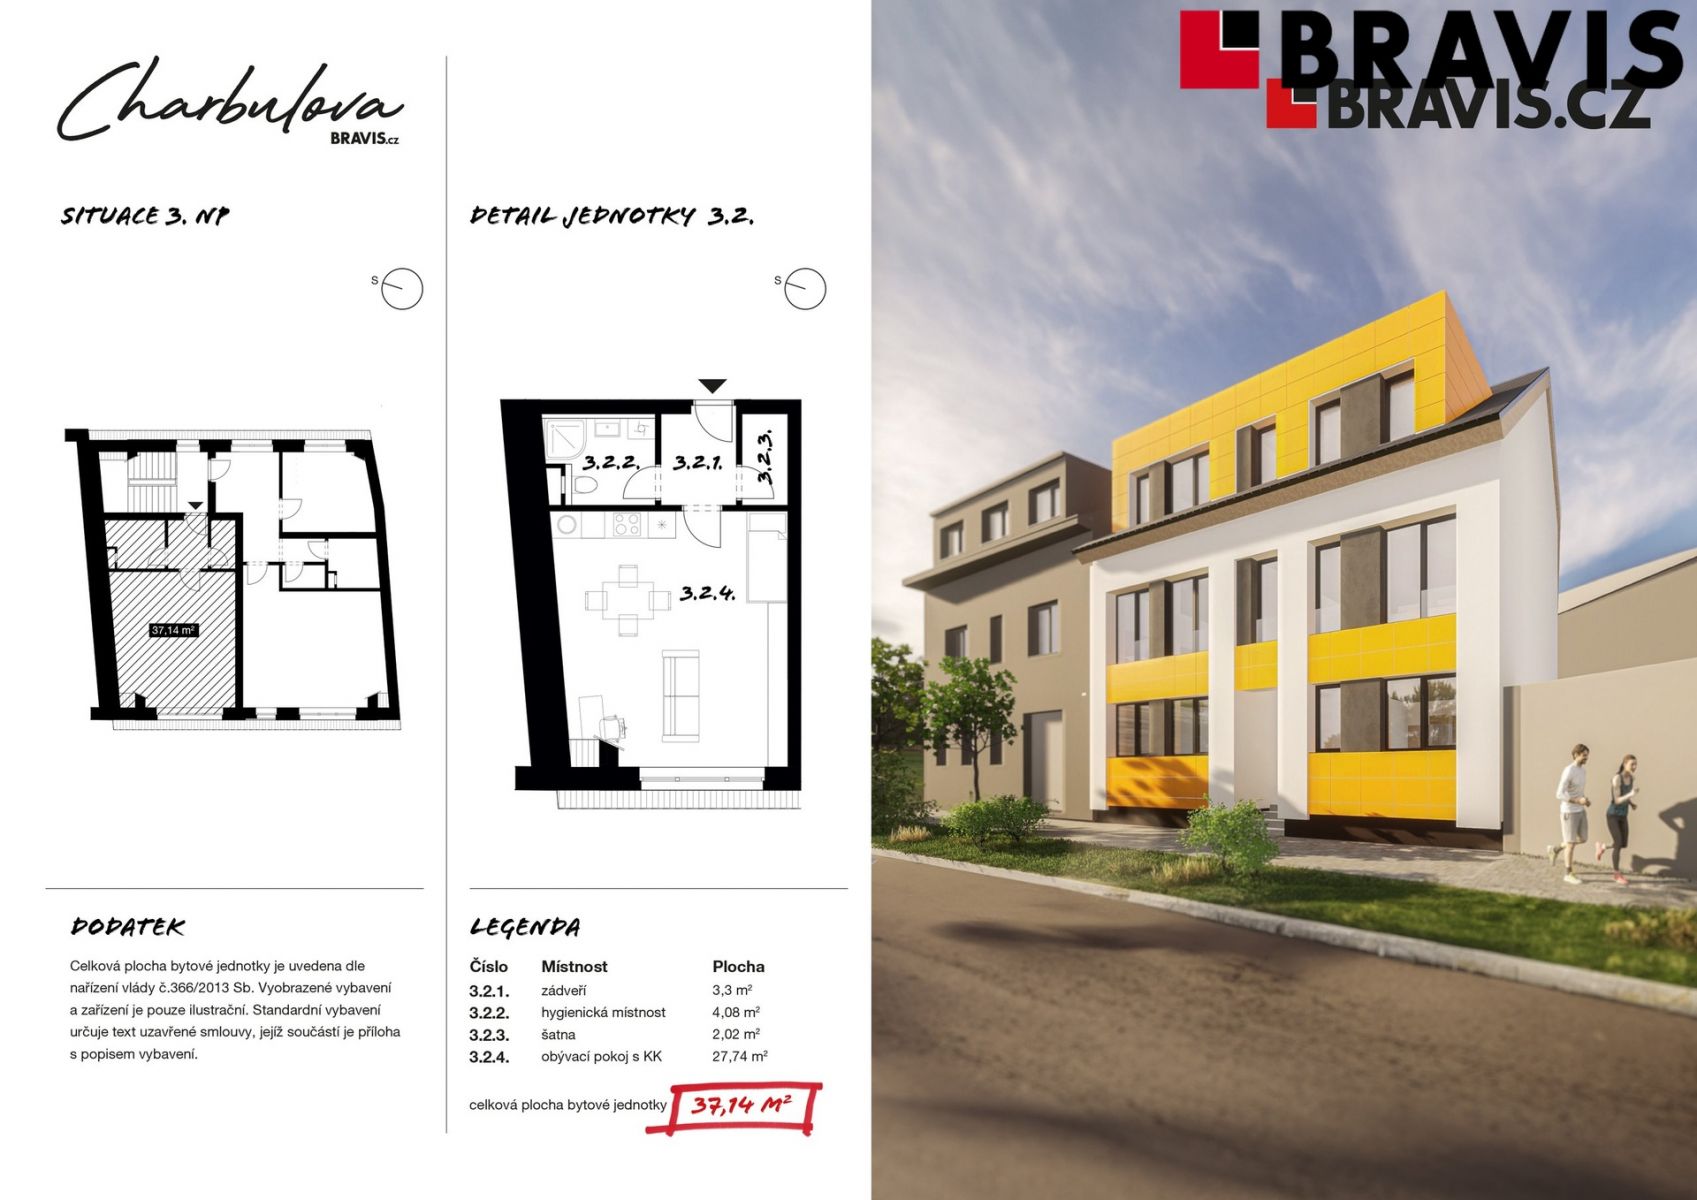 Prodej novostavby bytu 1+kk, ulice Charbulova, Brno - Černovice, včetně parkovacího stání, obrázek č. 3